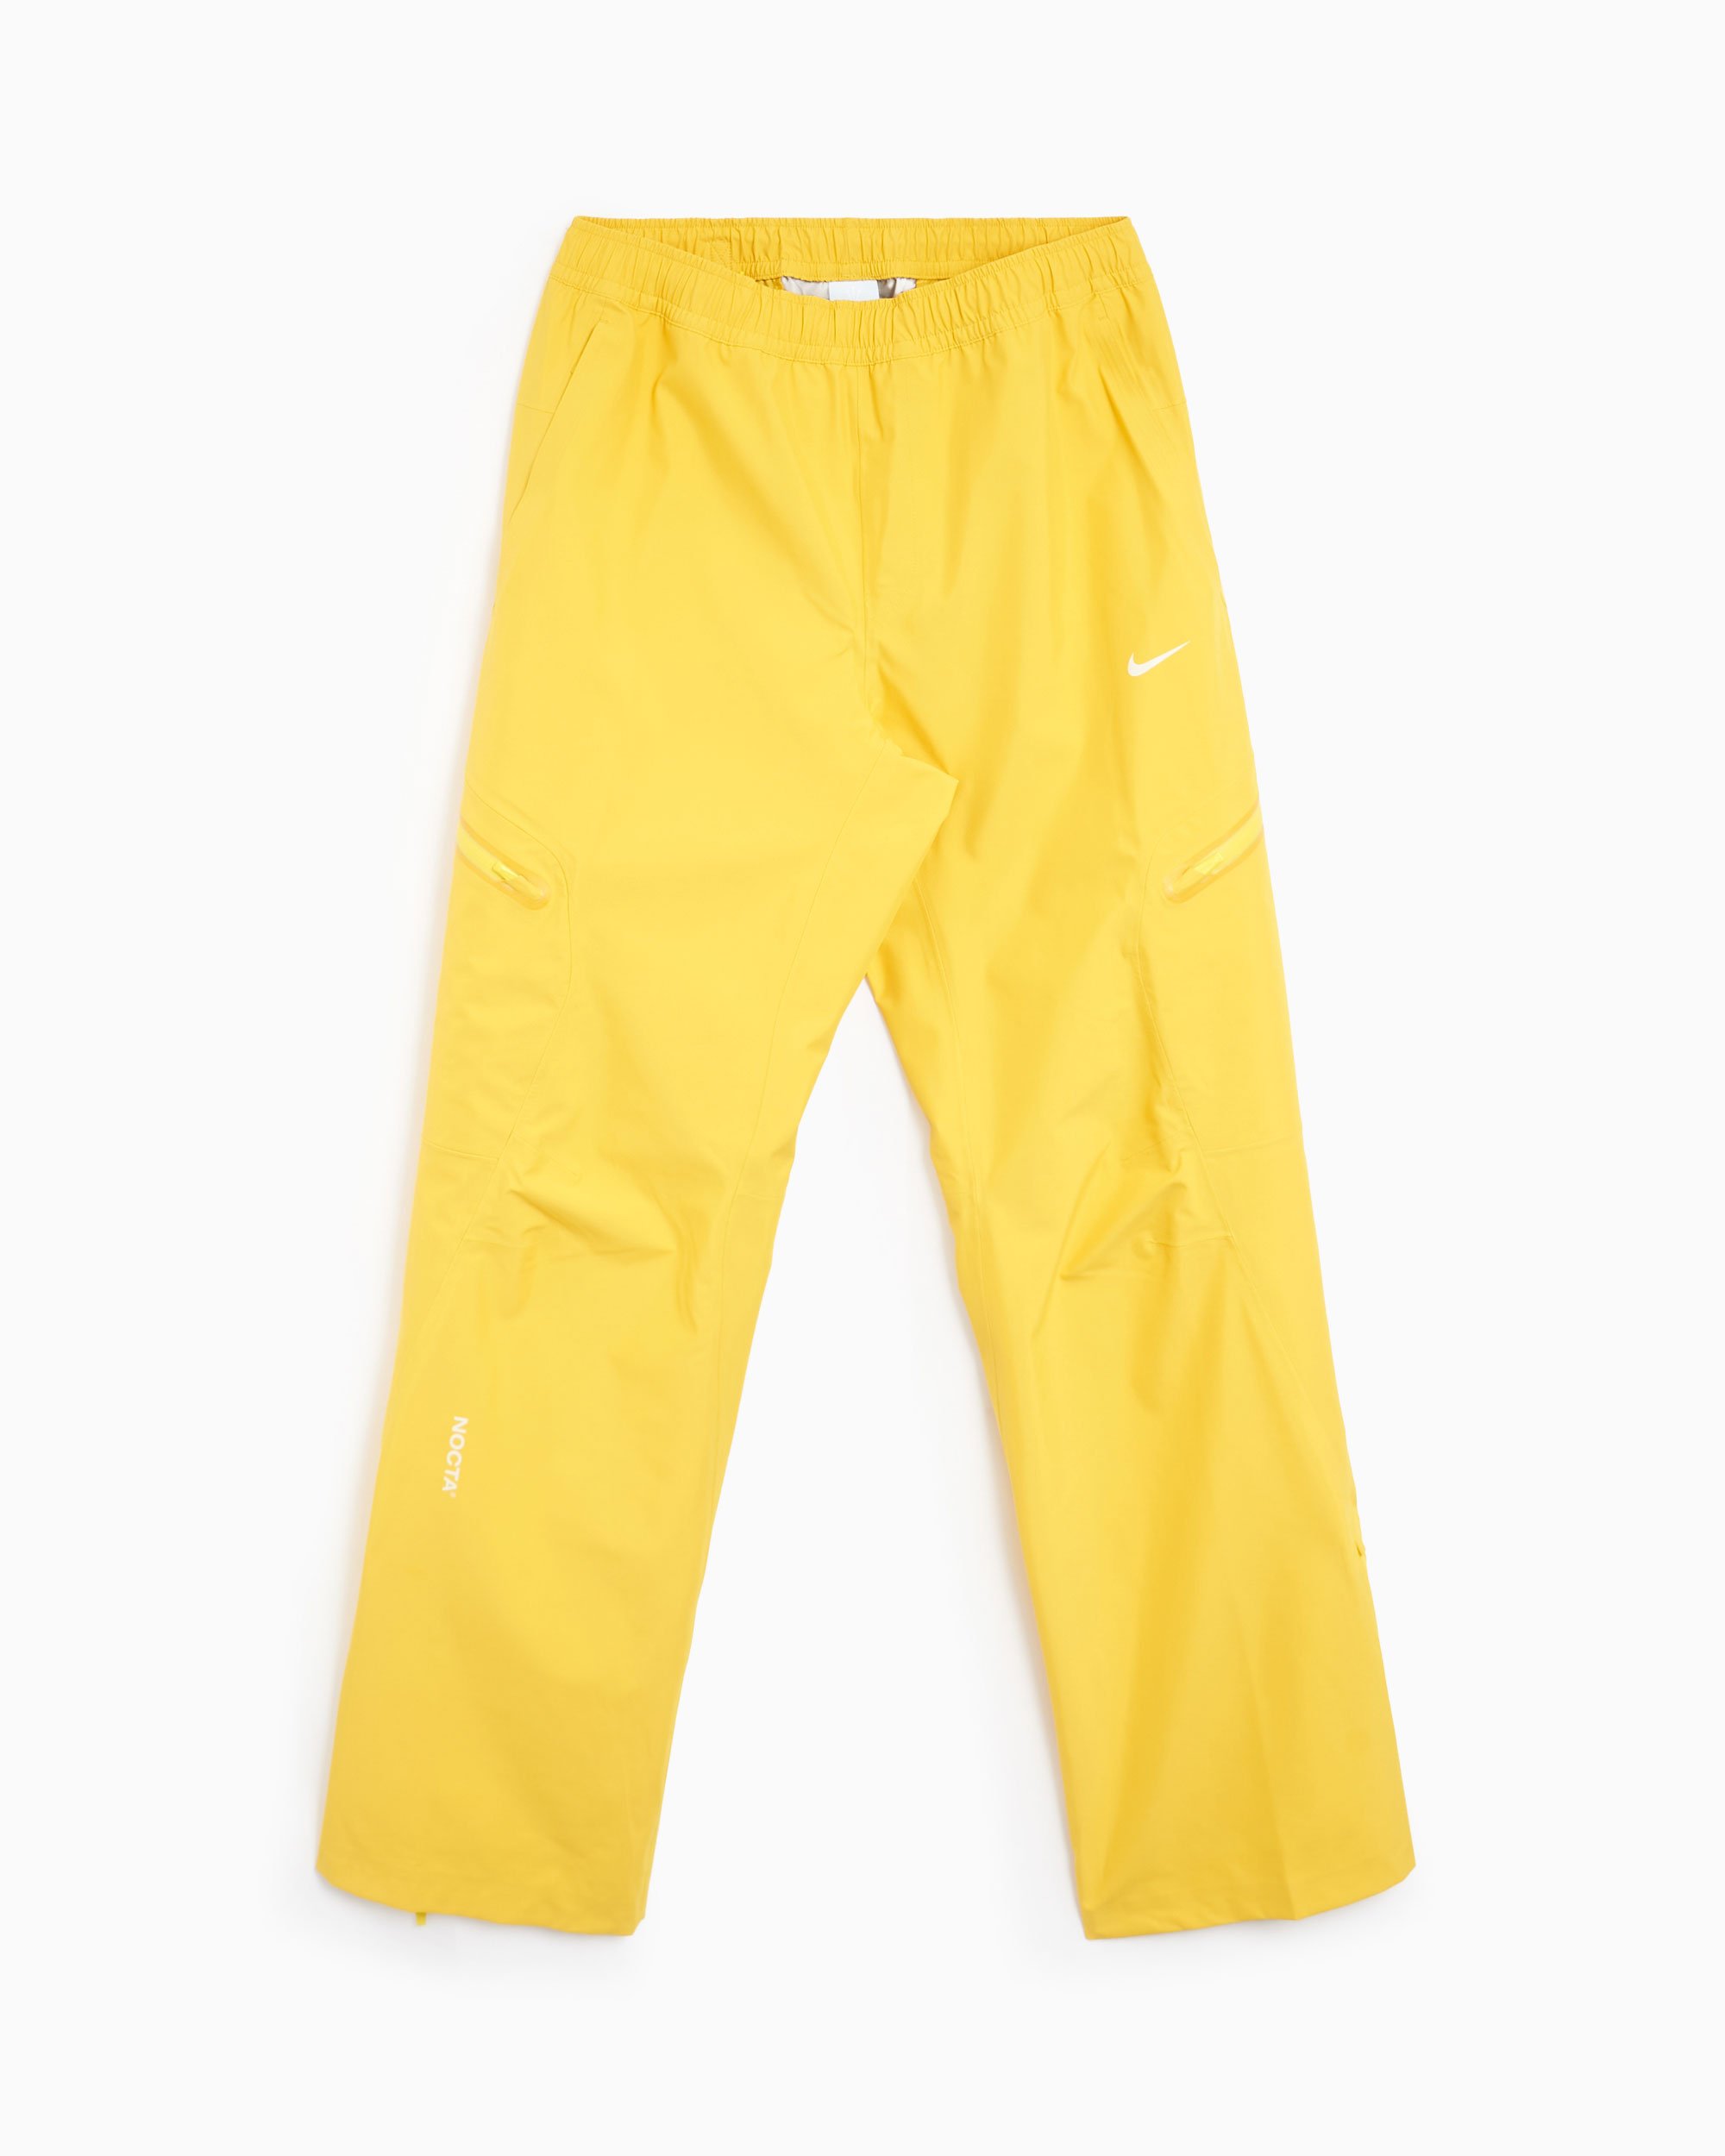 Nike x Drake NOCTA x L'ART NRG Tech Men's Pants Yellow FD2197-709 